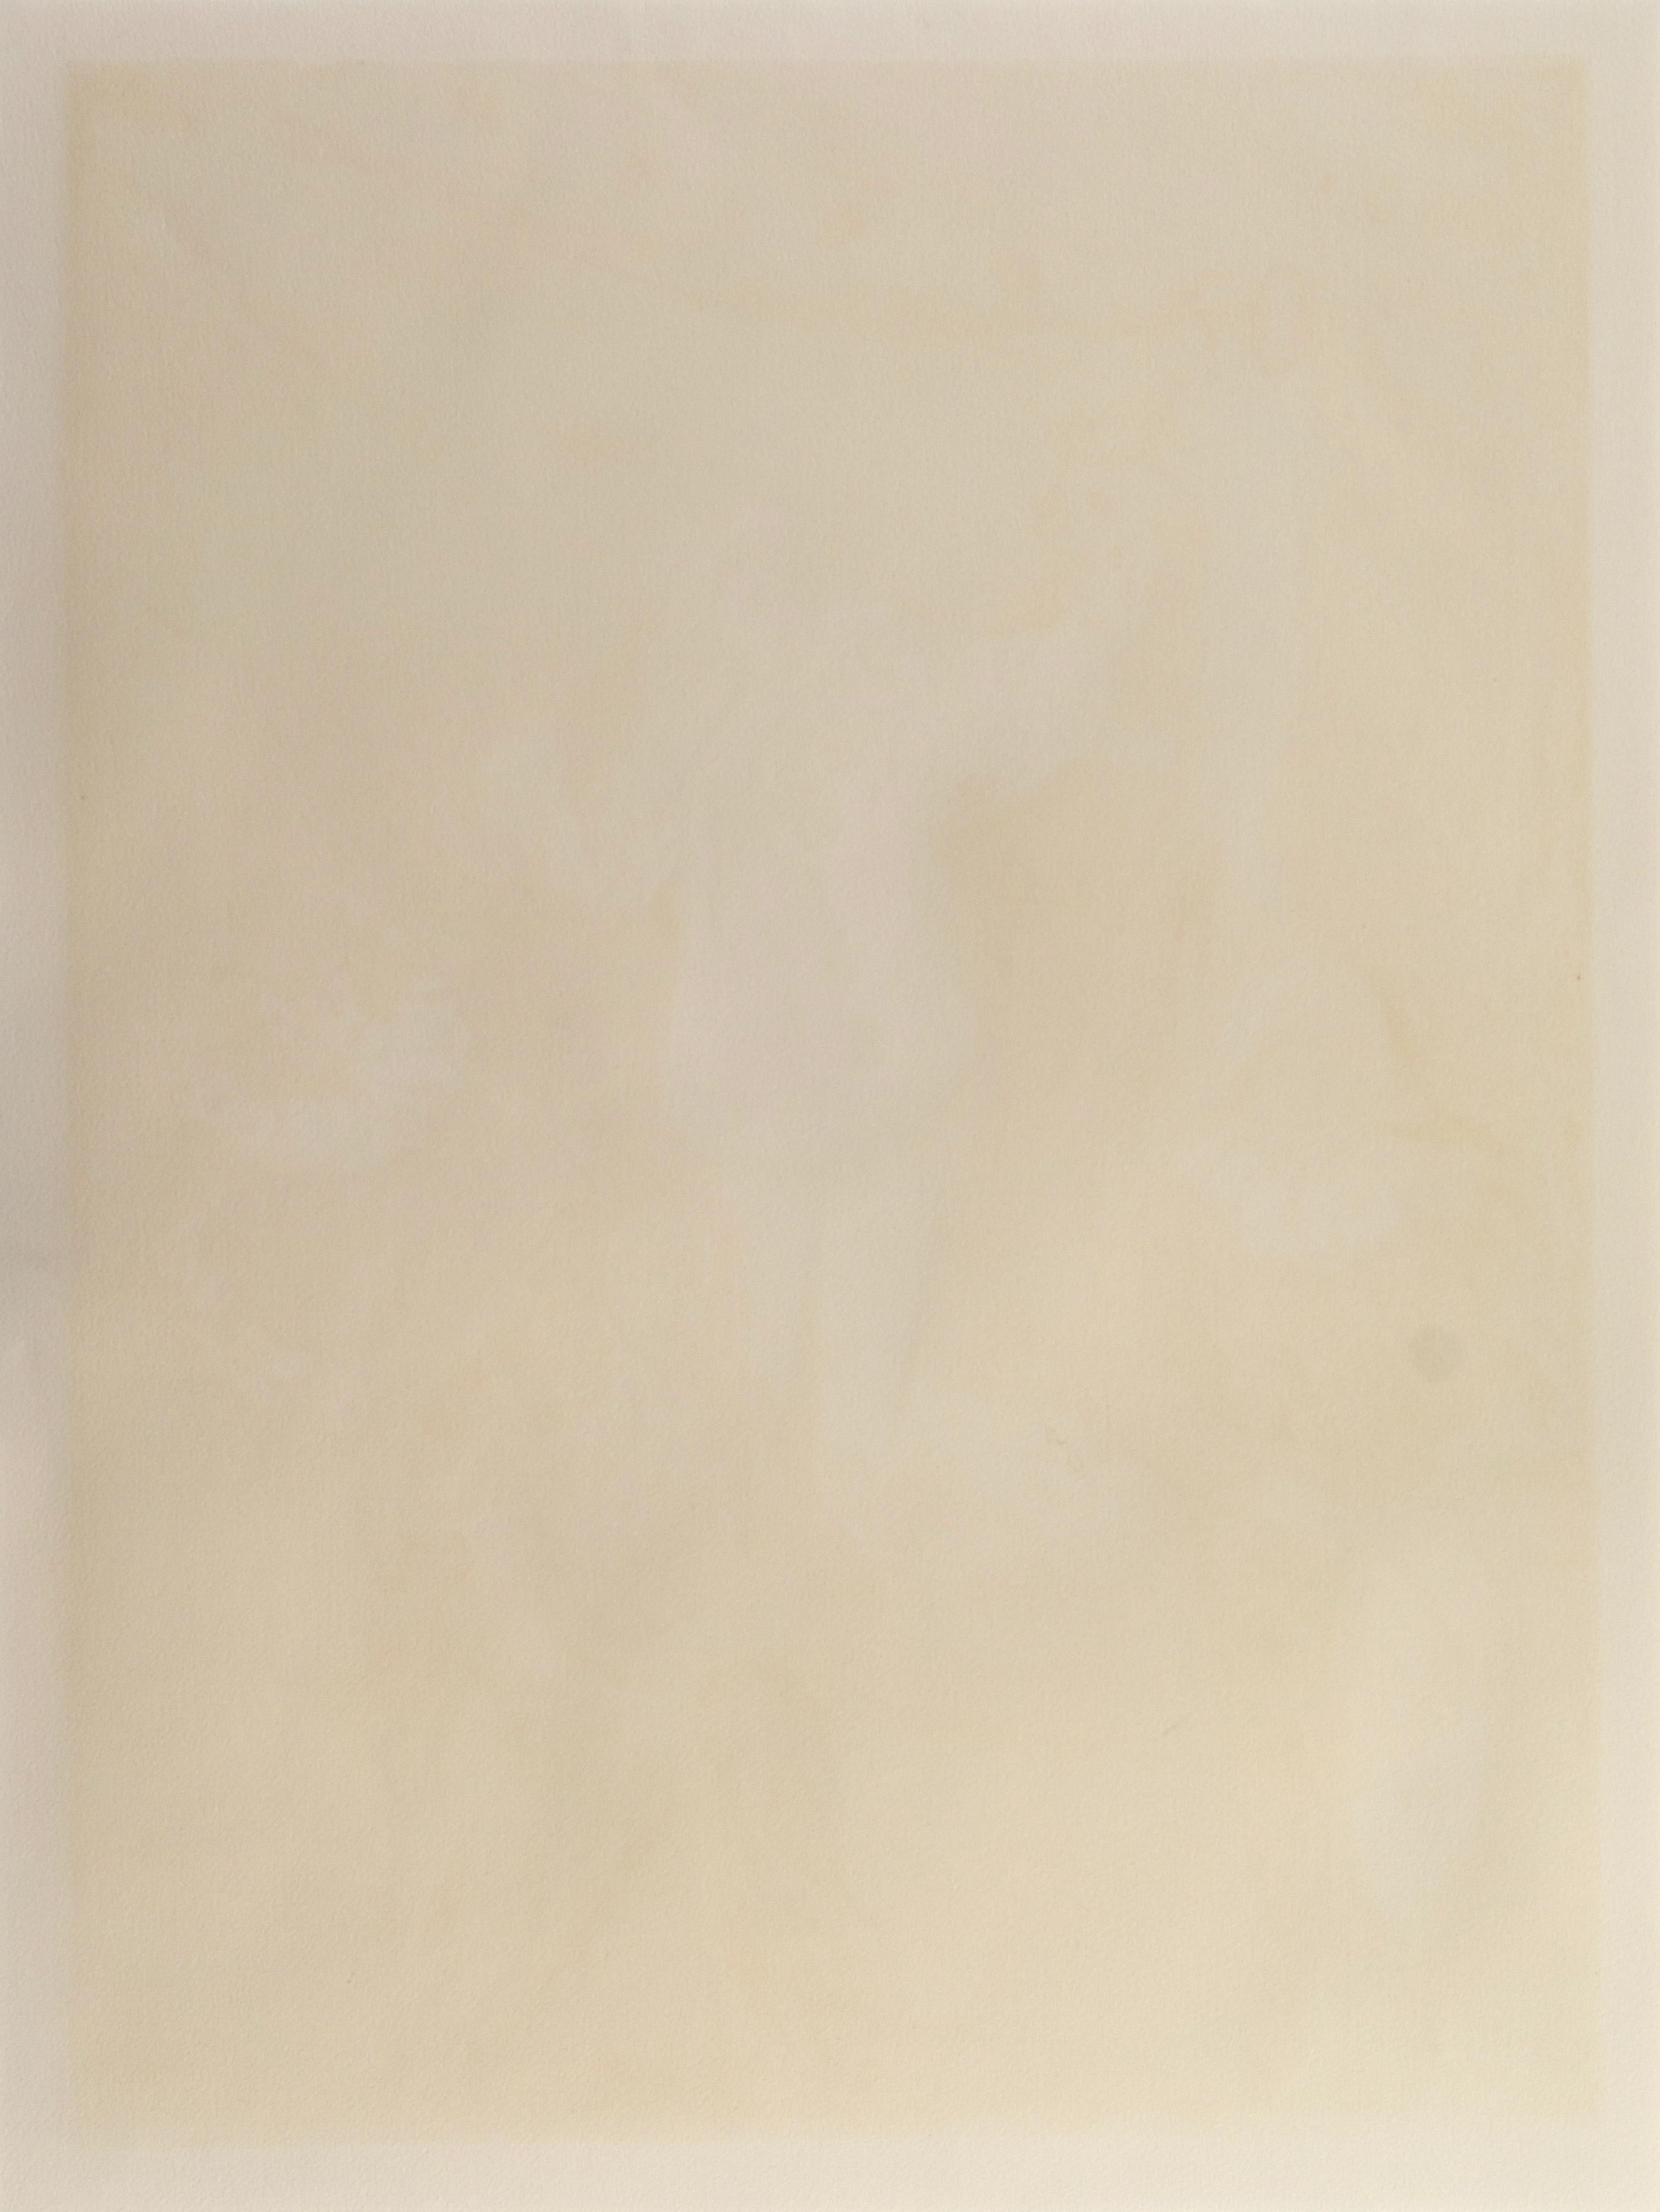 'Pierrot's Lament', Post-Impressionist, Paris Salon, Centre Pompidou, NY MoMA For Sale 5